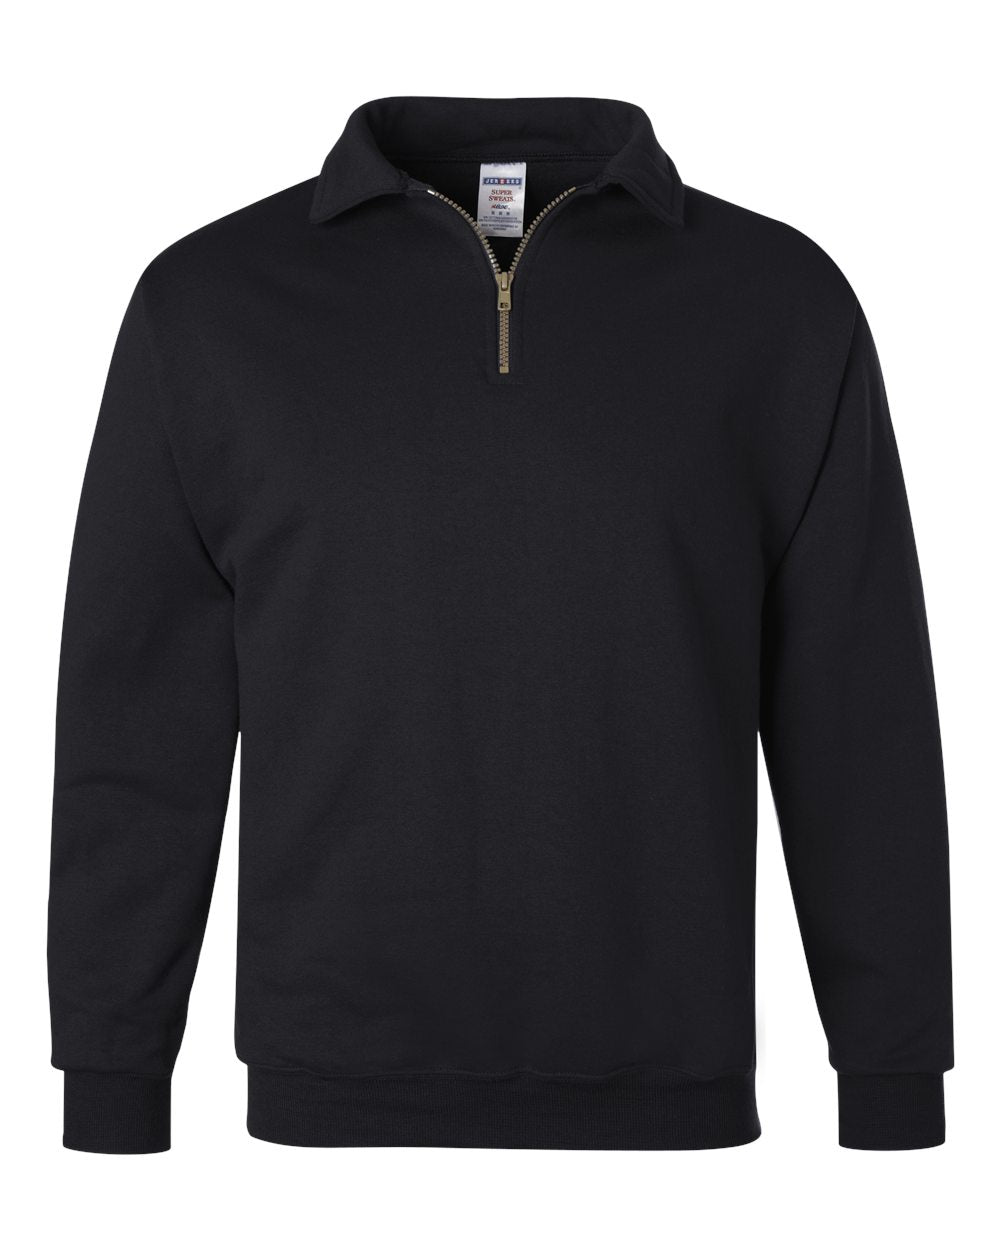 JERZEES Super Sweats NuBlend® Quarter-Zip Cadet Collar Sweatshirt